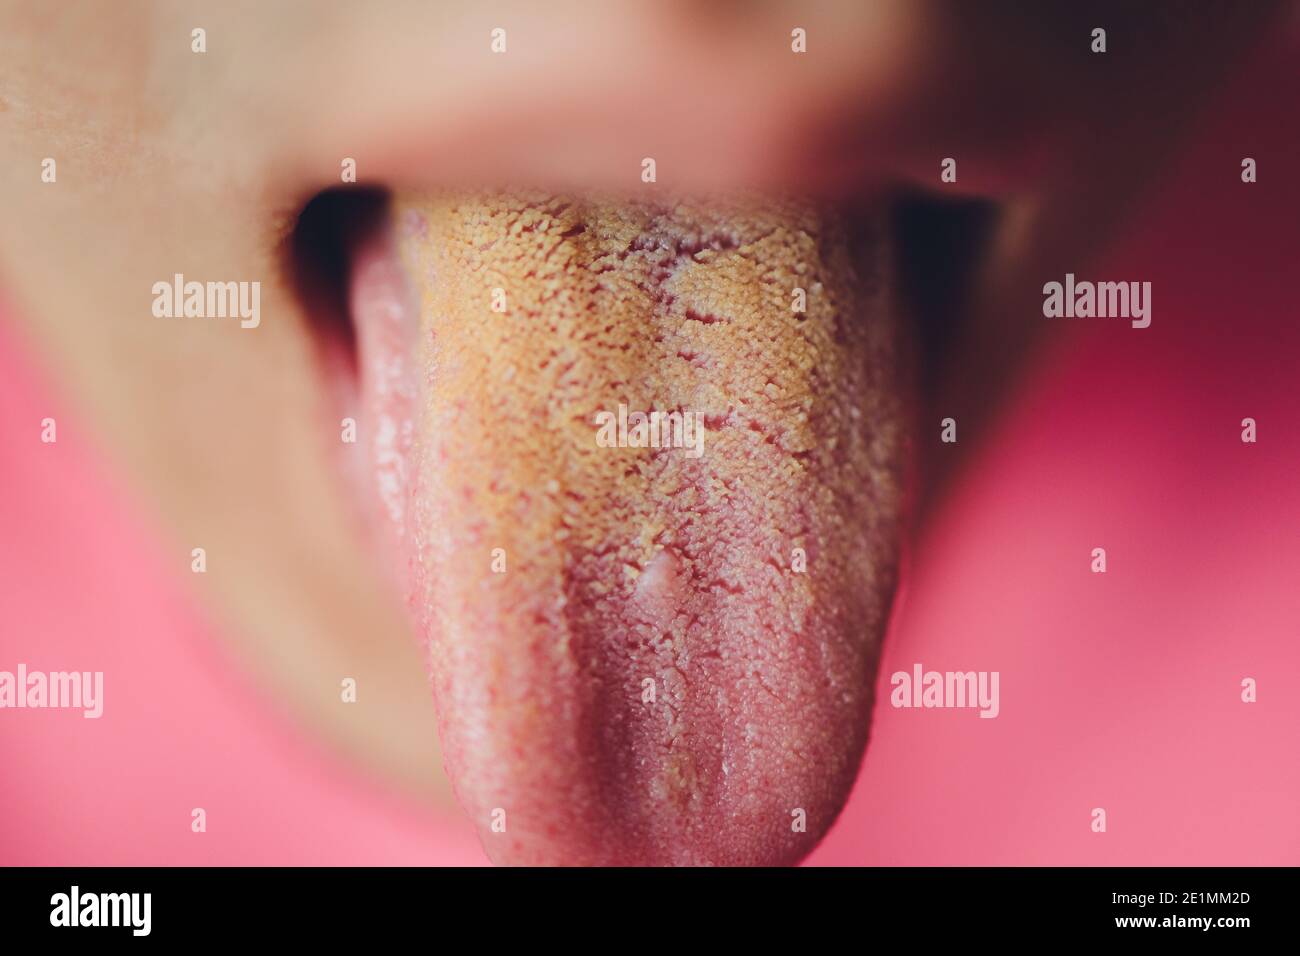 Schmutzige Zunge, Nahaufnahme, gelb wegen Krankheit Stockfotografie - Alamy